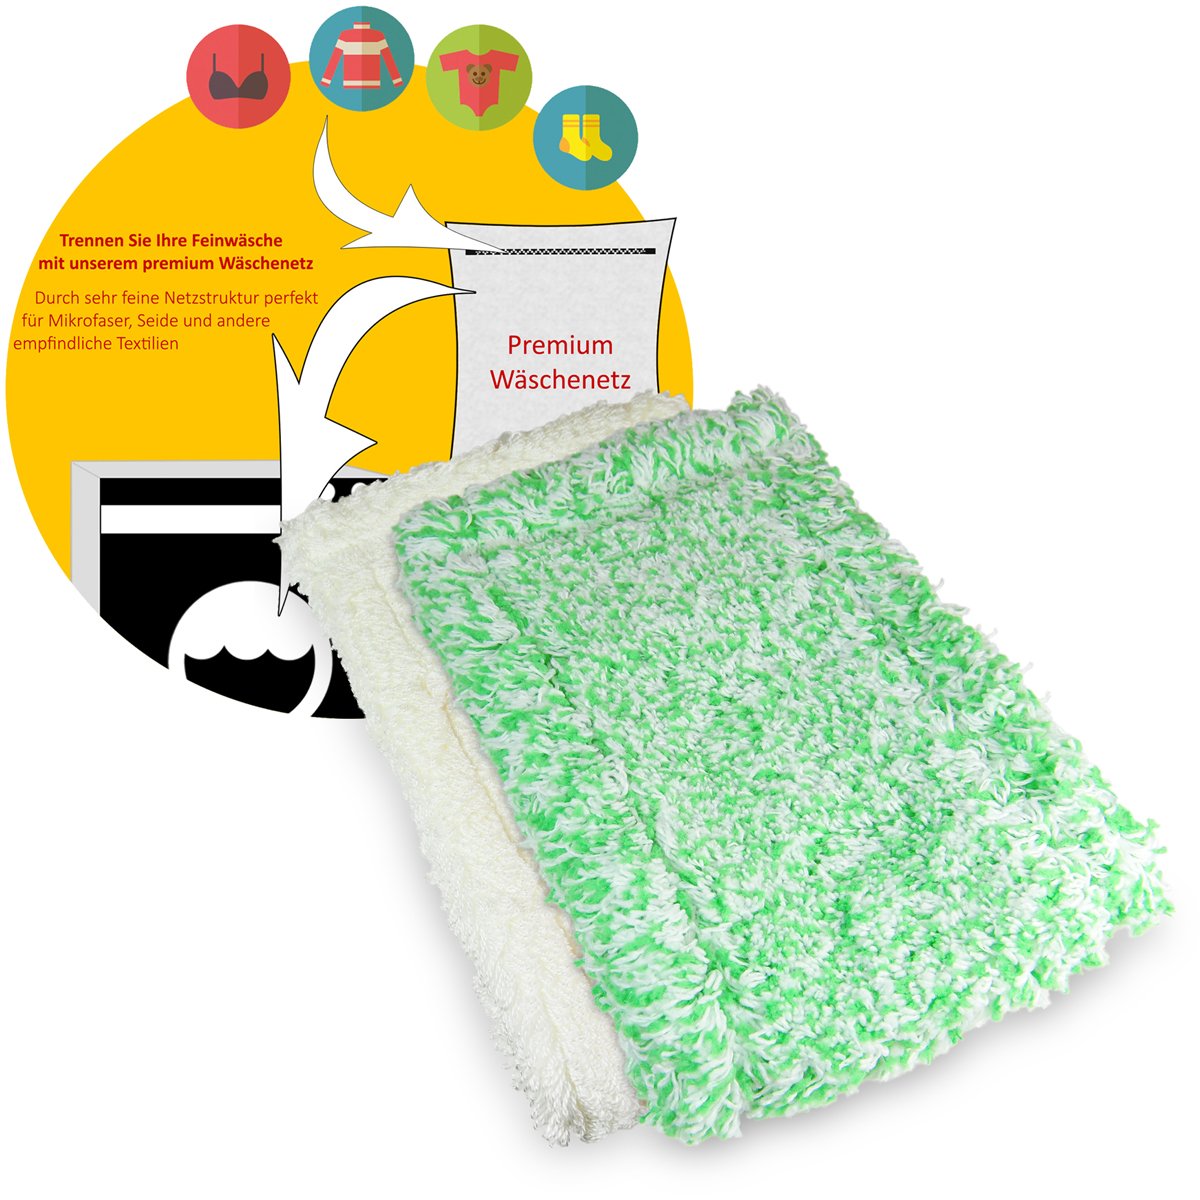 Jemako Bodentuch Set grüne Faser lang und weiss kurze Faser 42cm für glatte und glänzende Böden sowie Kunststoffböden inkl. Wäschenetz